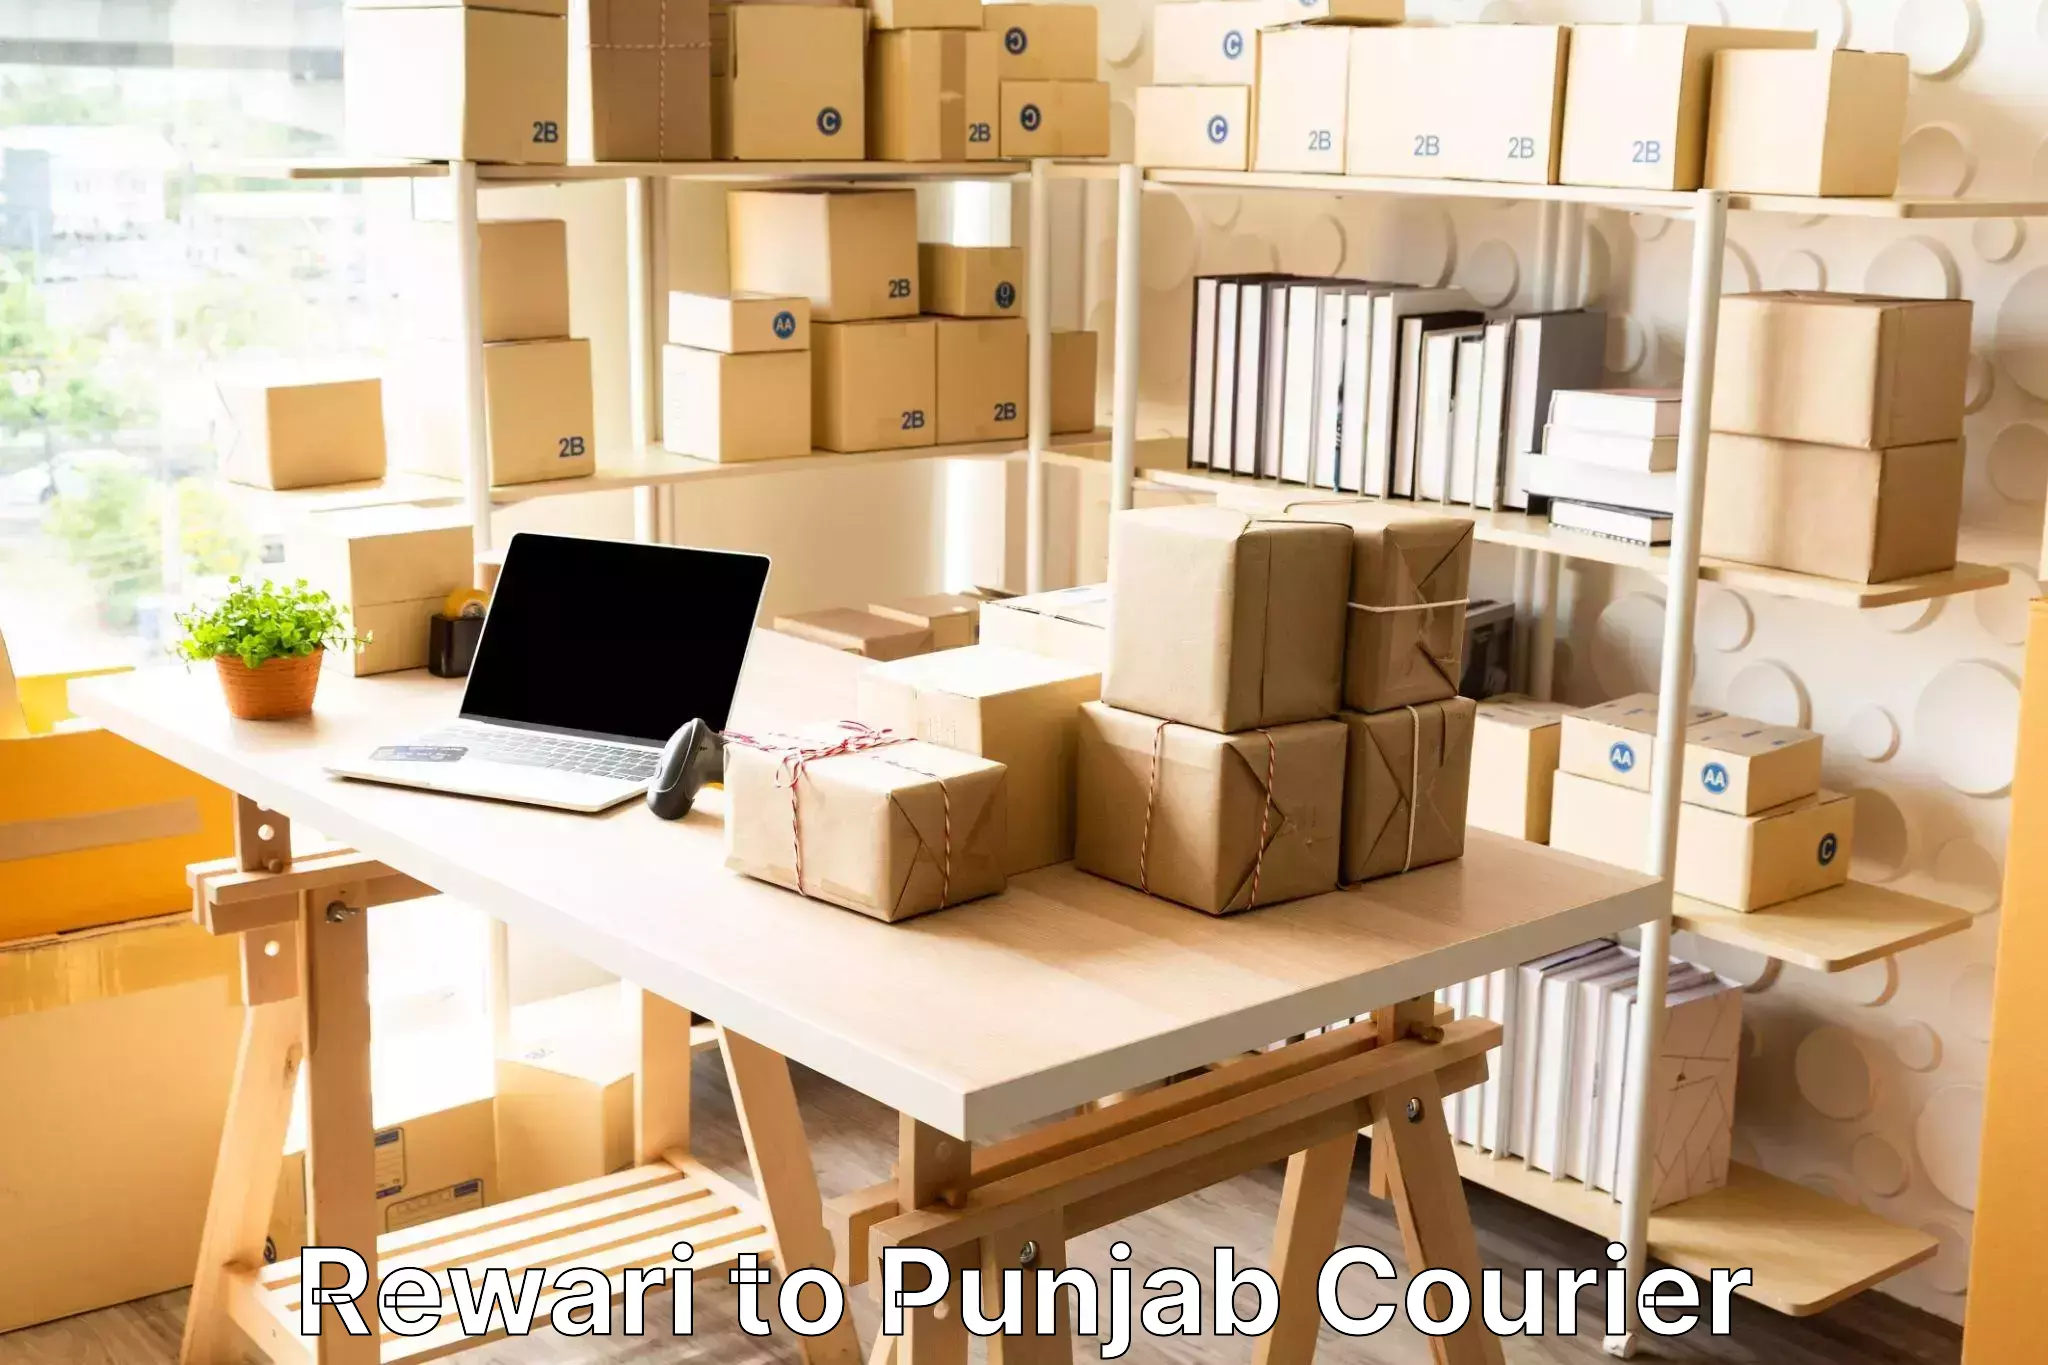 Luggage transport company Rewari to Punjab